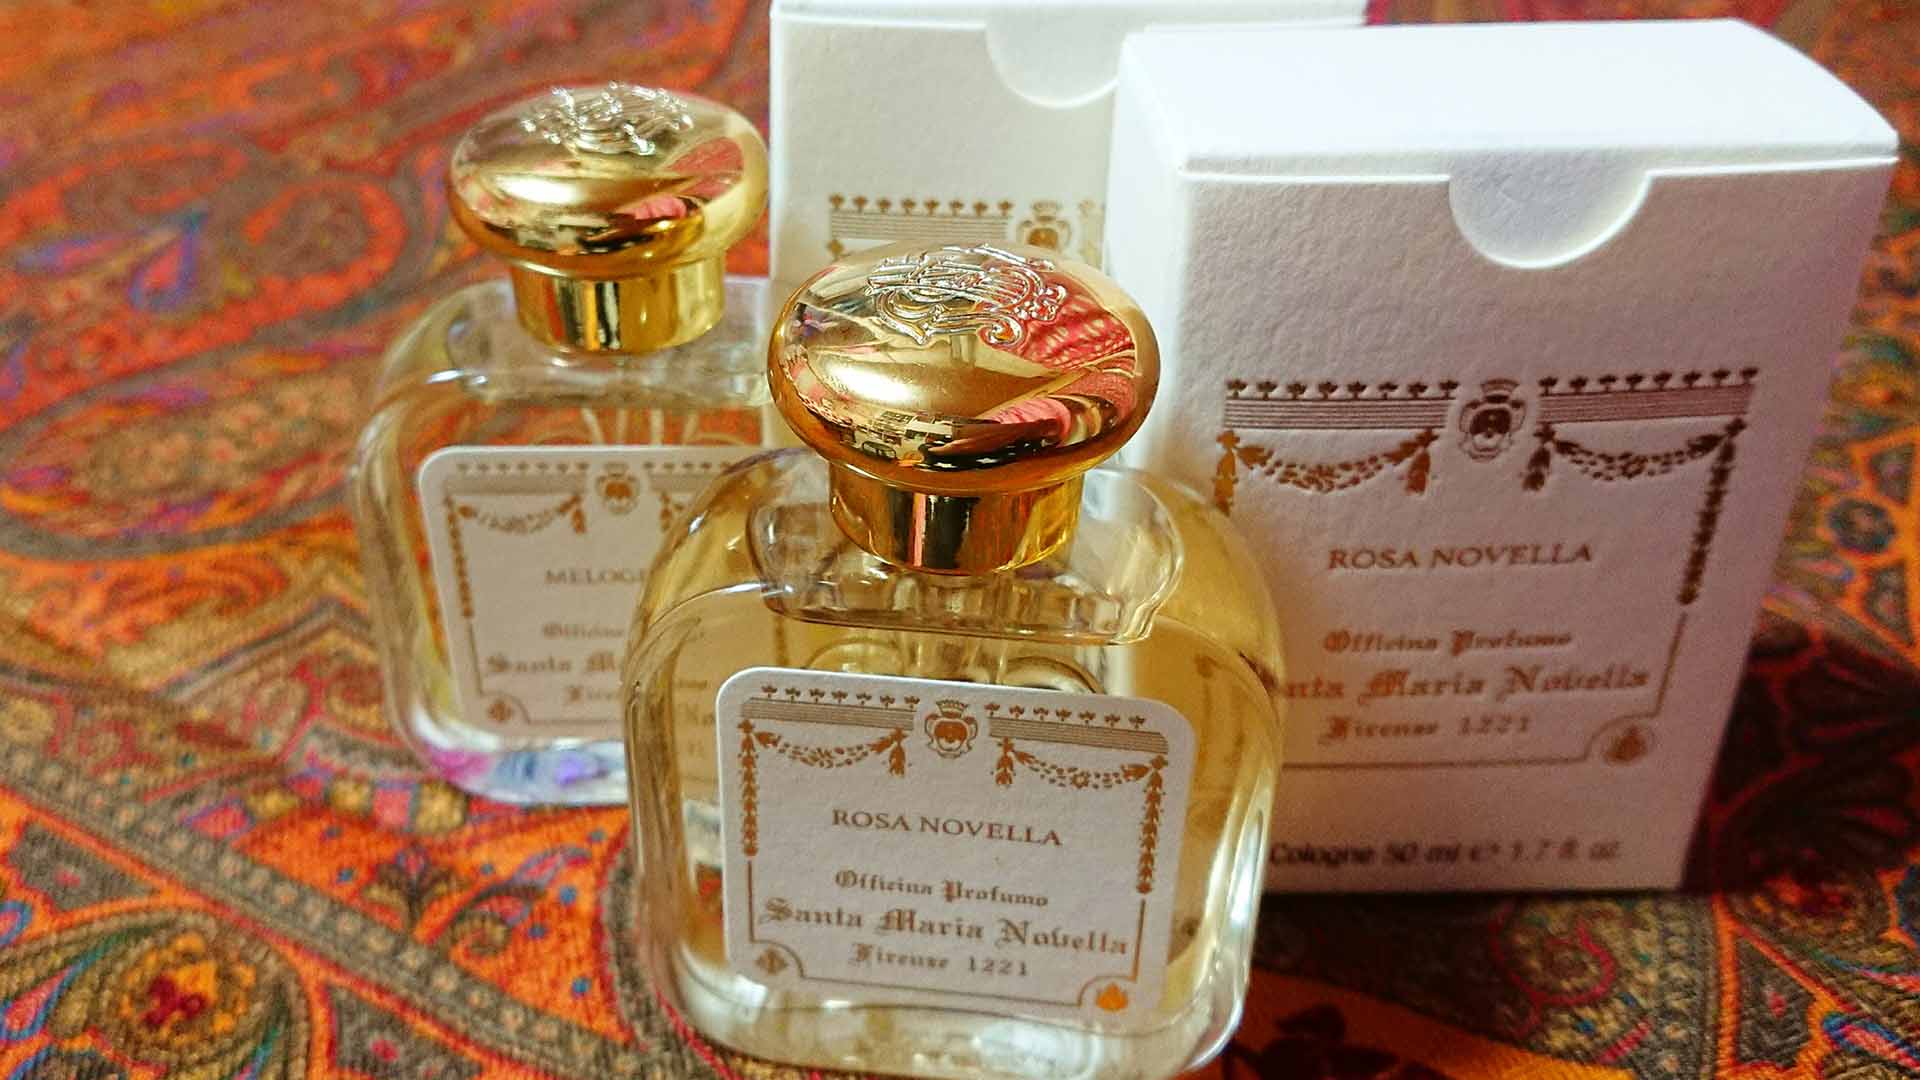 サンタ・マリア・ノヴェッラ オーデコロン(ザクロ、ローザノヴェッラ)/モノアミンバランスすら整える香りの効能